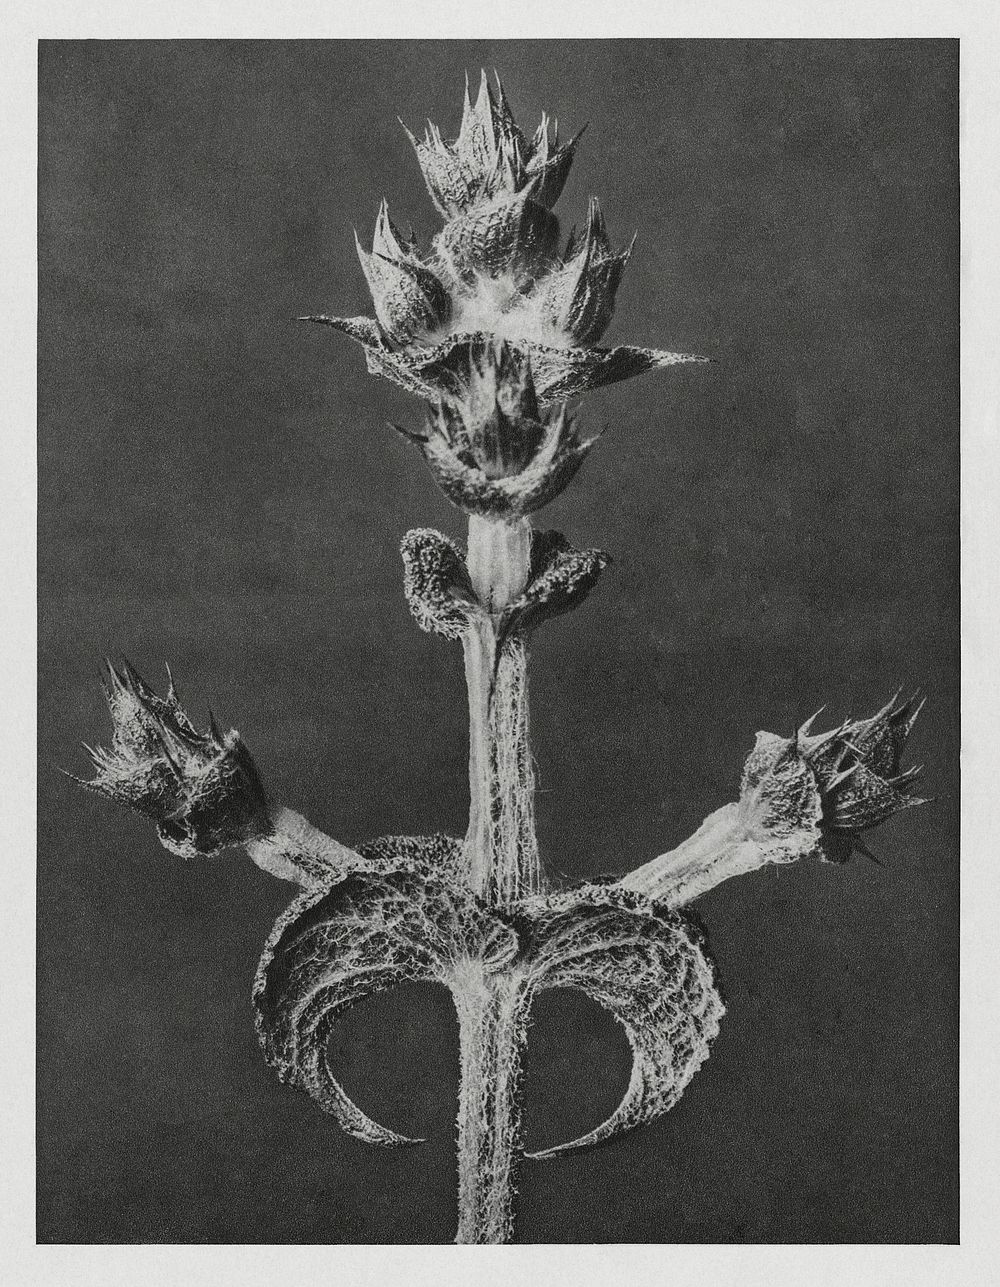 Salvia Aethiopis (Mediterranean Sage) enlarged 4 times from Urformen der Kunst (1928) by Karl Blossfeldt. Original from The…